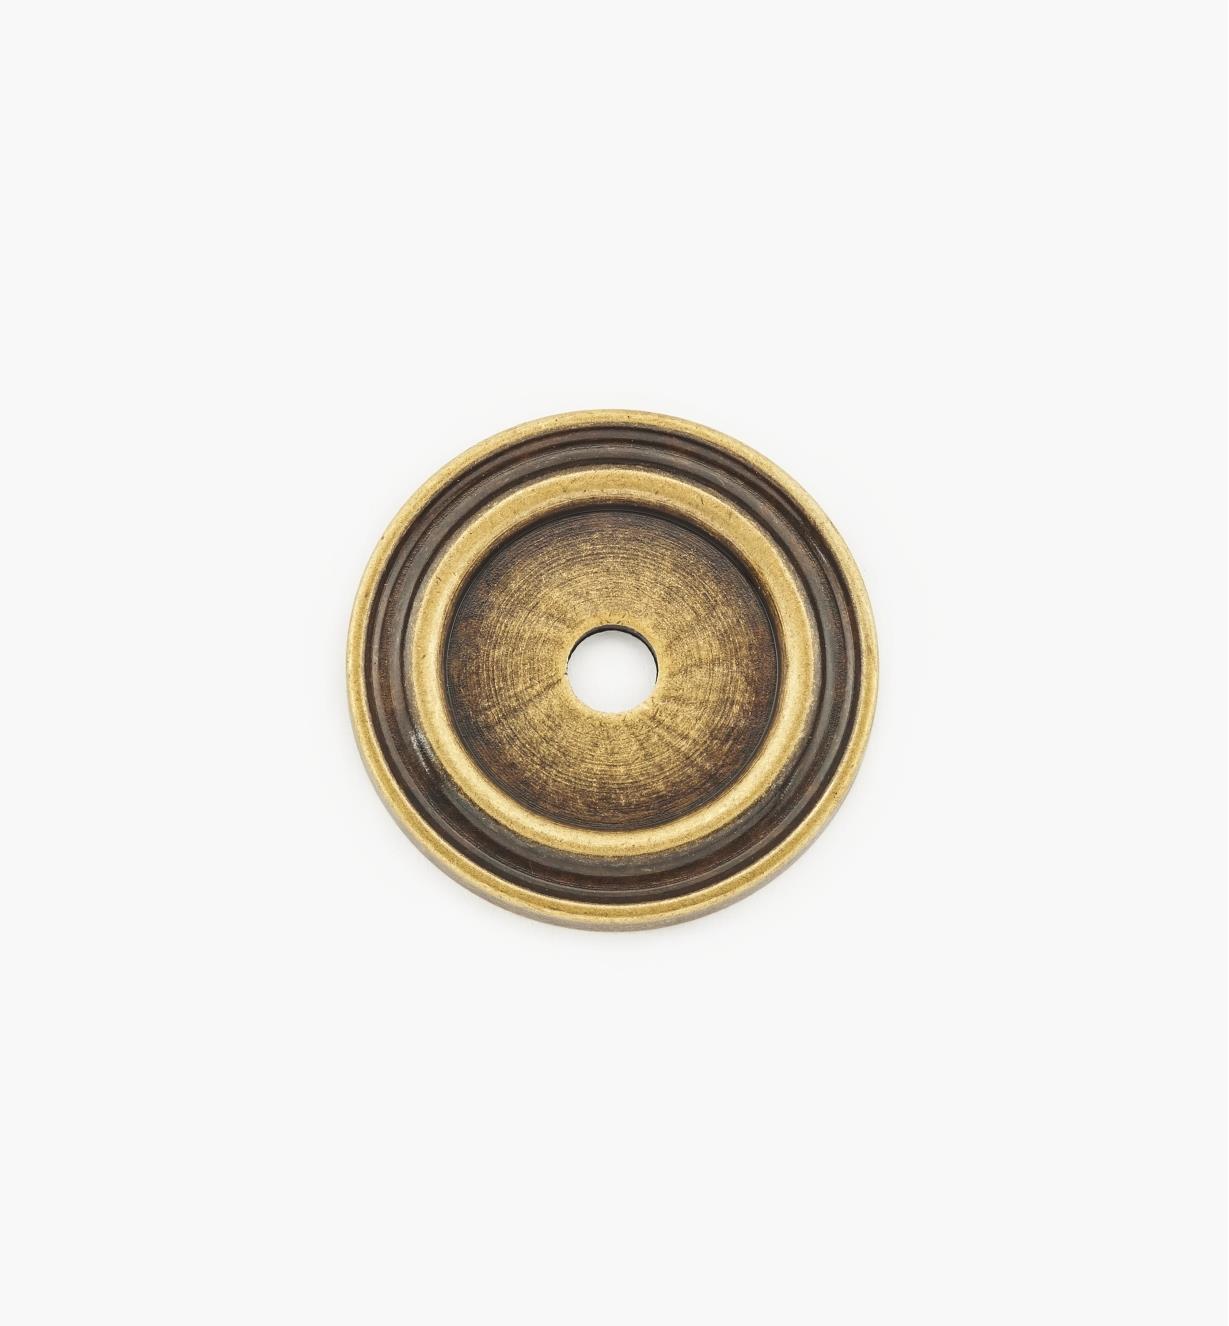 01A0725 - Rosace pour bouton, fini laiton antique, 25 mm